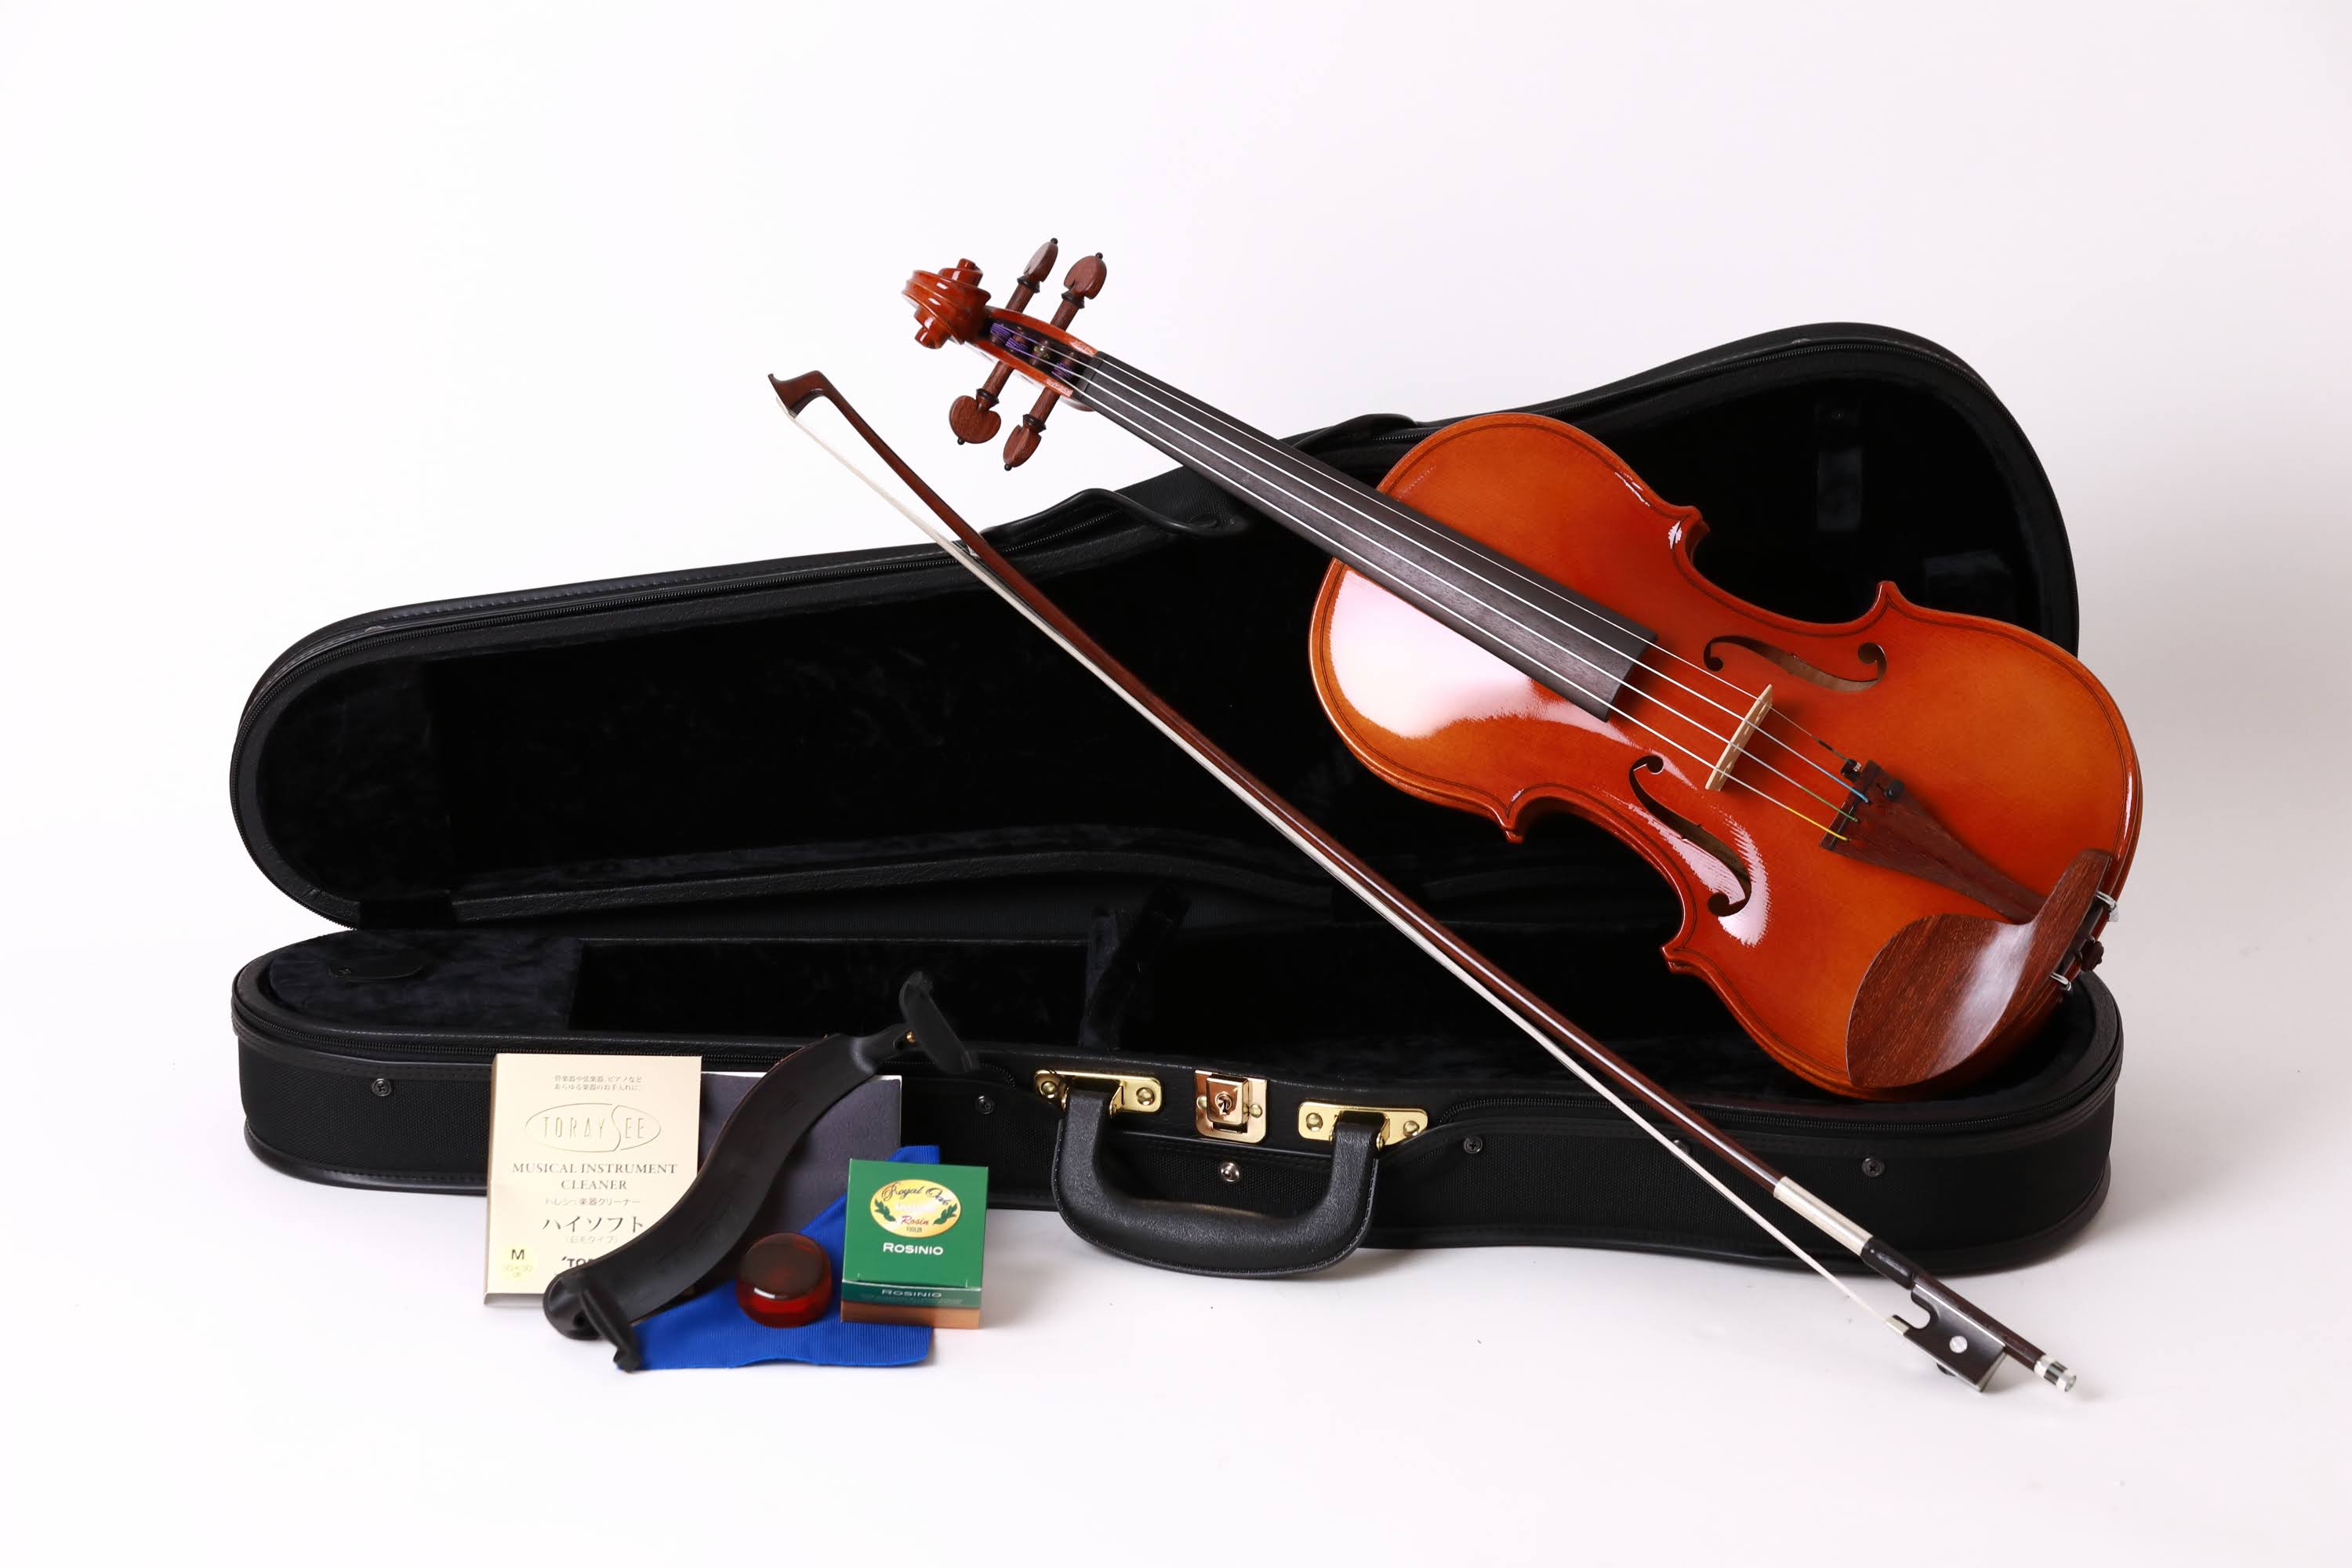 こんにちは。バイオリン担当：鈴木です。 ドイツ製バイオリン、ヨハネス・キュンストラーのバイオリンセットが入荷しました！ こちらのTHN18 Meisterは完全ドイツ製のハンドメイドモデル！ そして島村楽器の限定仕様！ 通常モデルは黒檀パーツを使用しているのに対し、Meisterモデルについてのみ木 […]